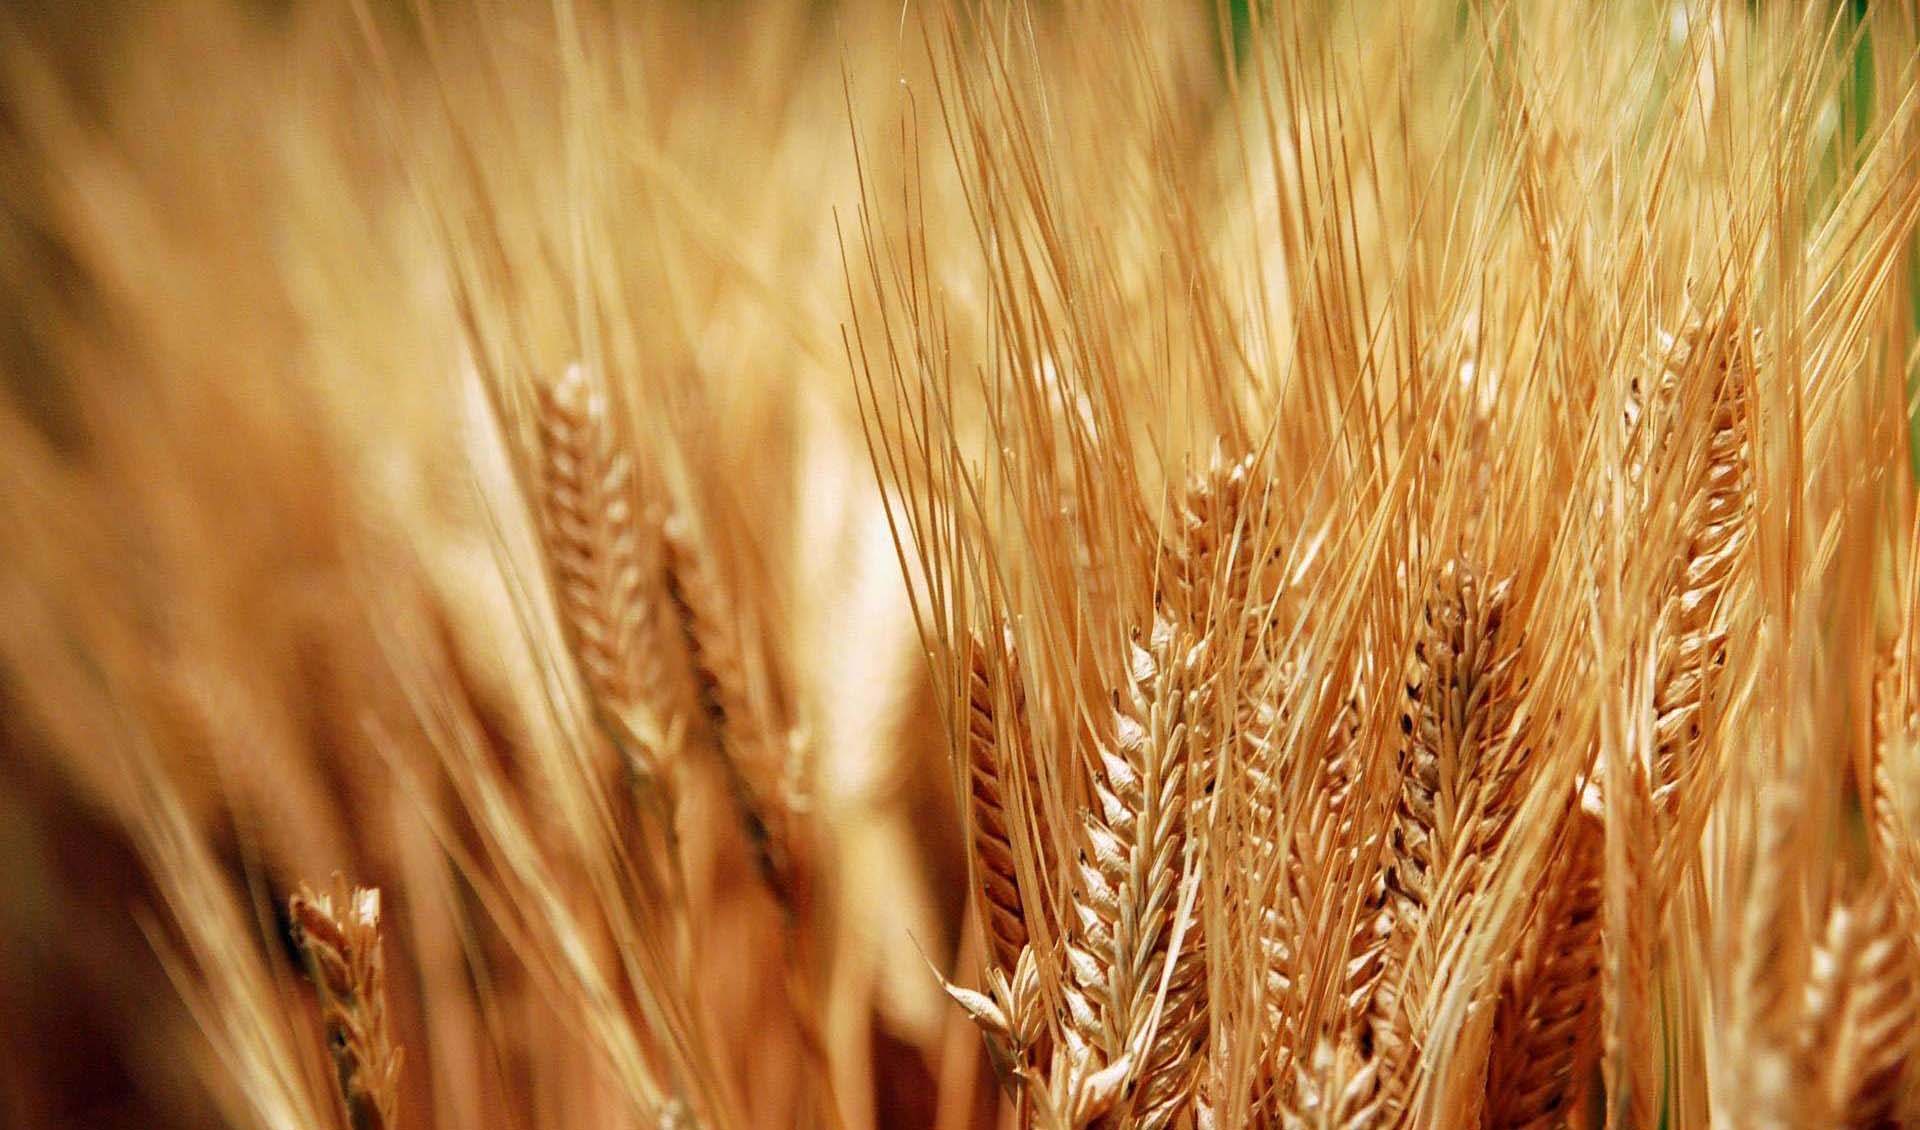 فائو: گندم در یک سال اخیر ۵۶ درصد گران شد